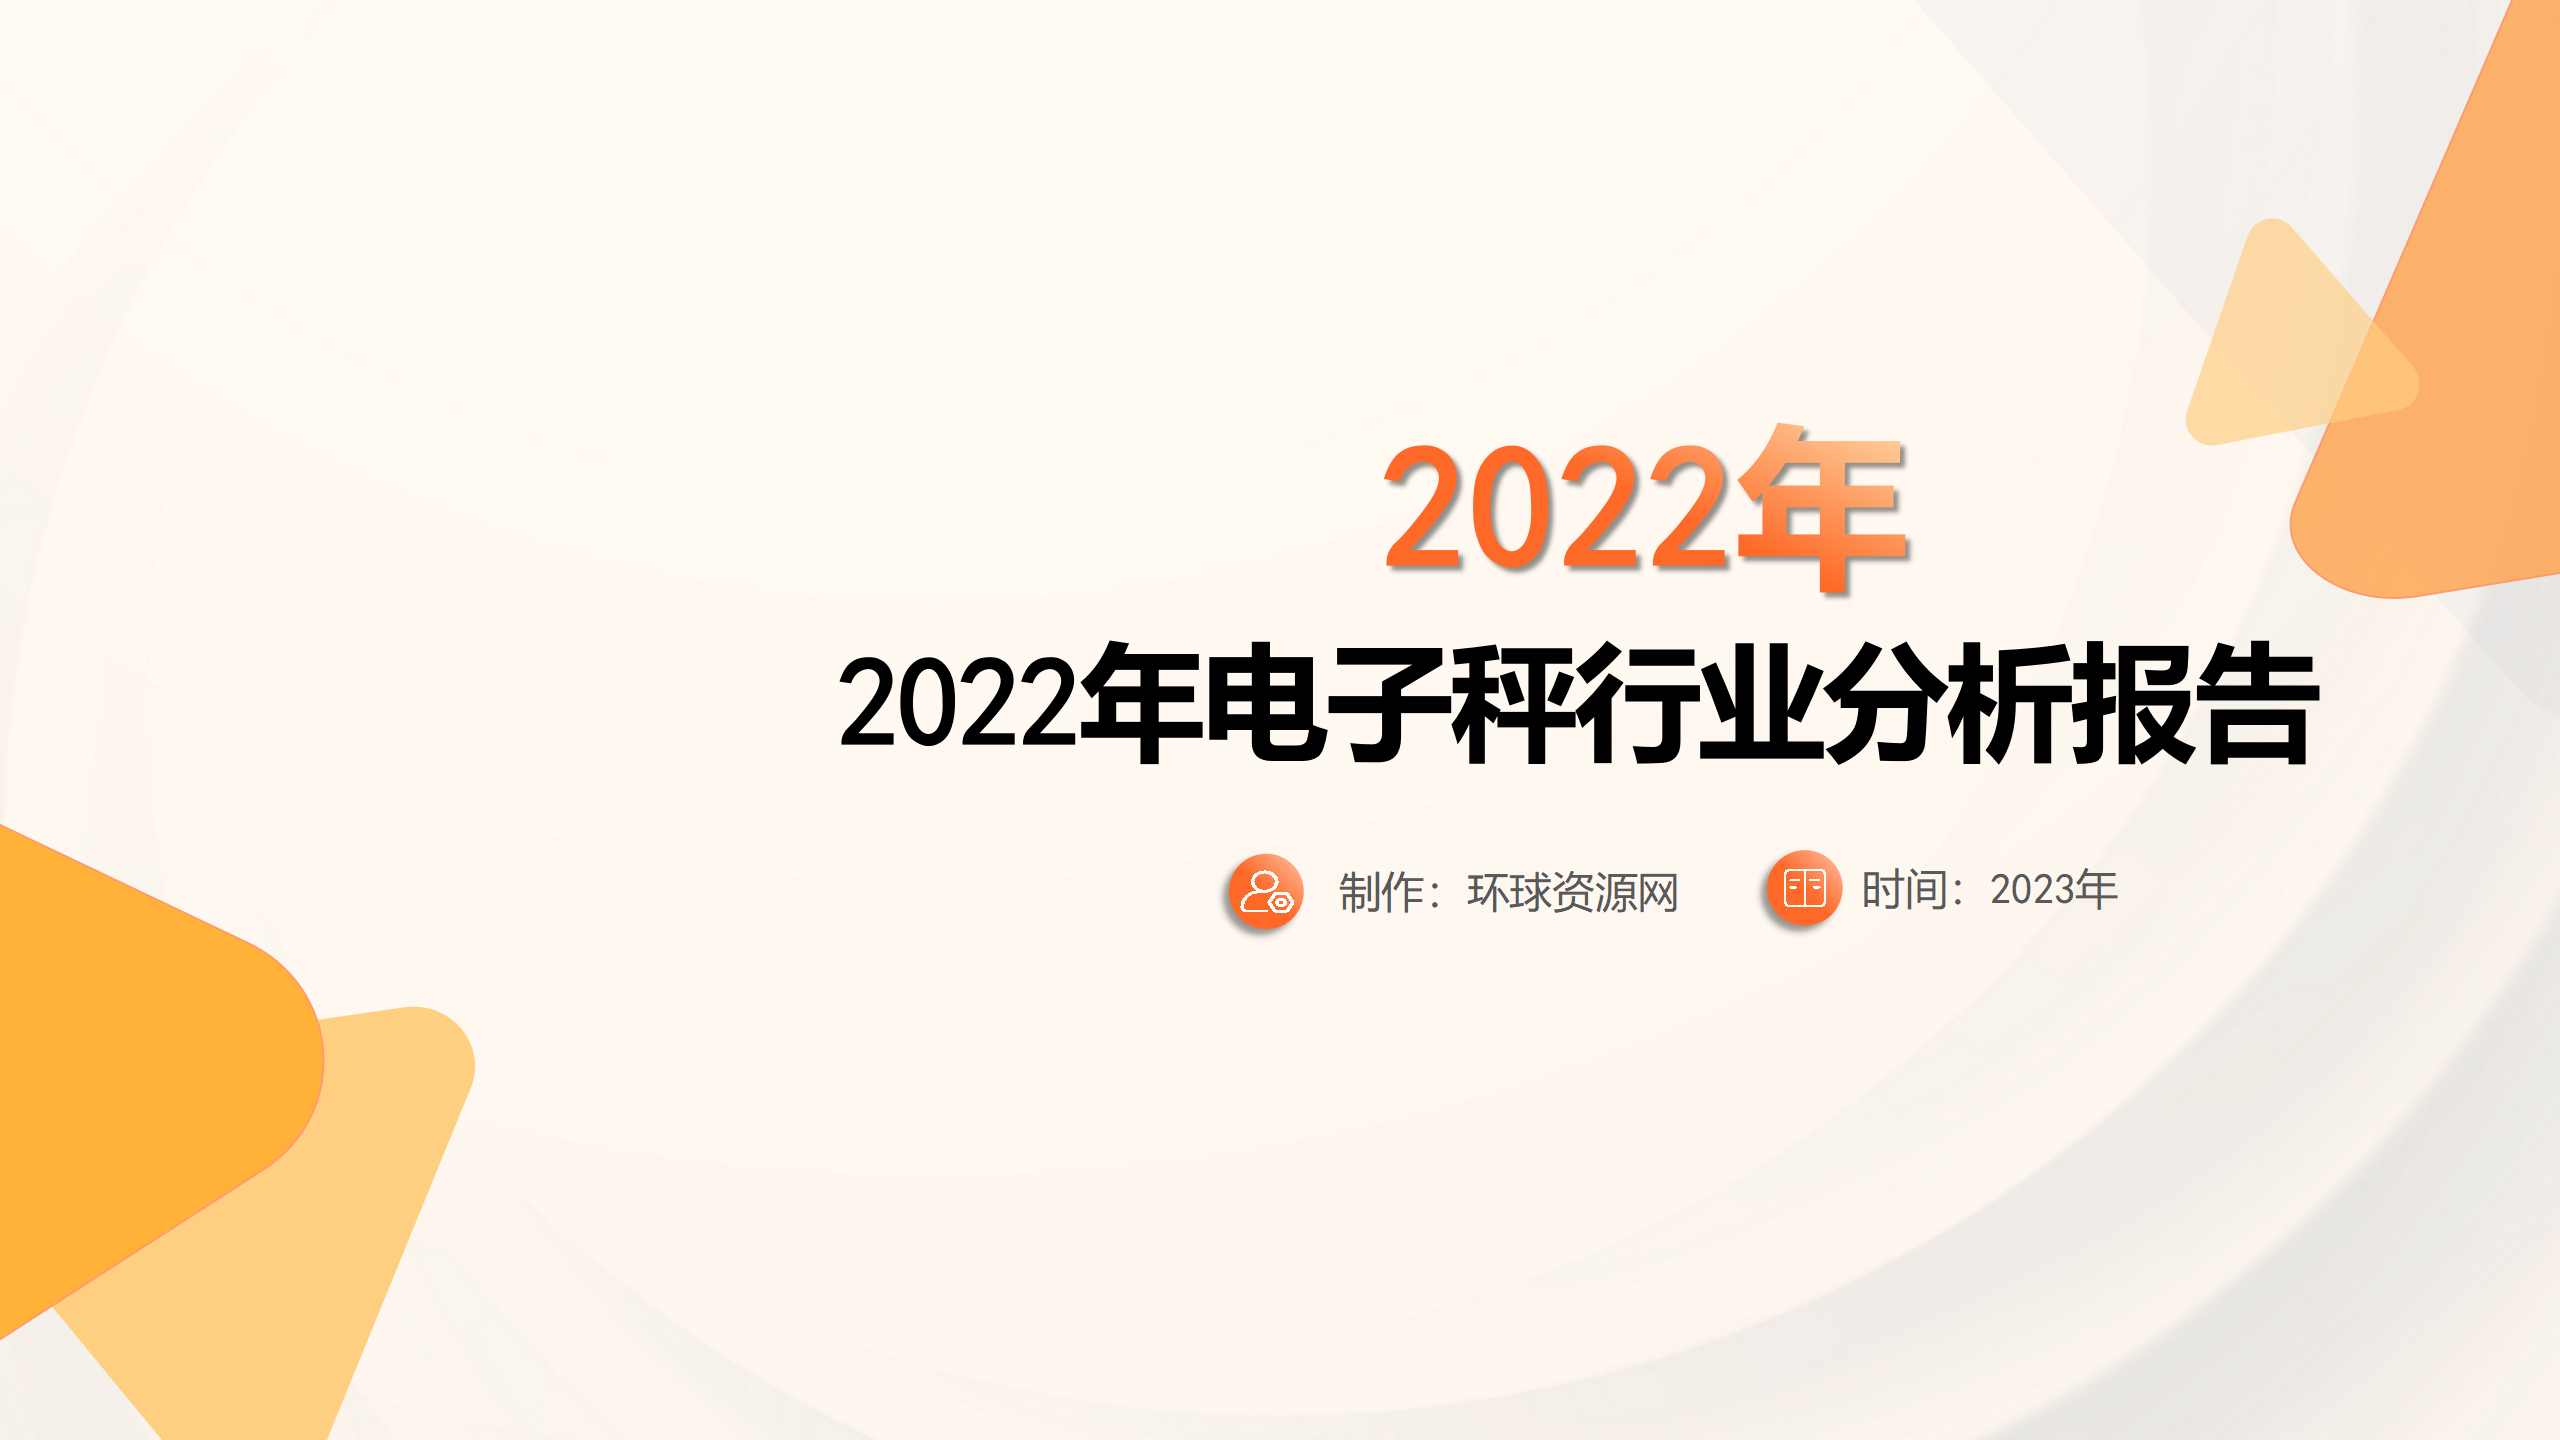 2022年电子秤行业分析报告